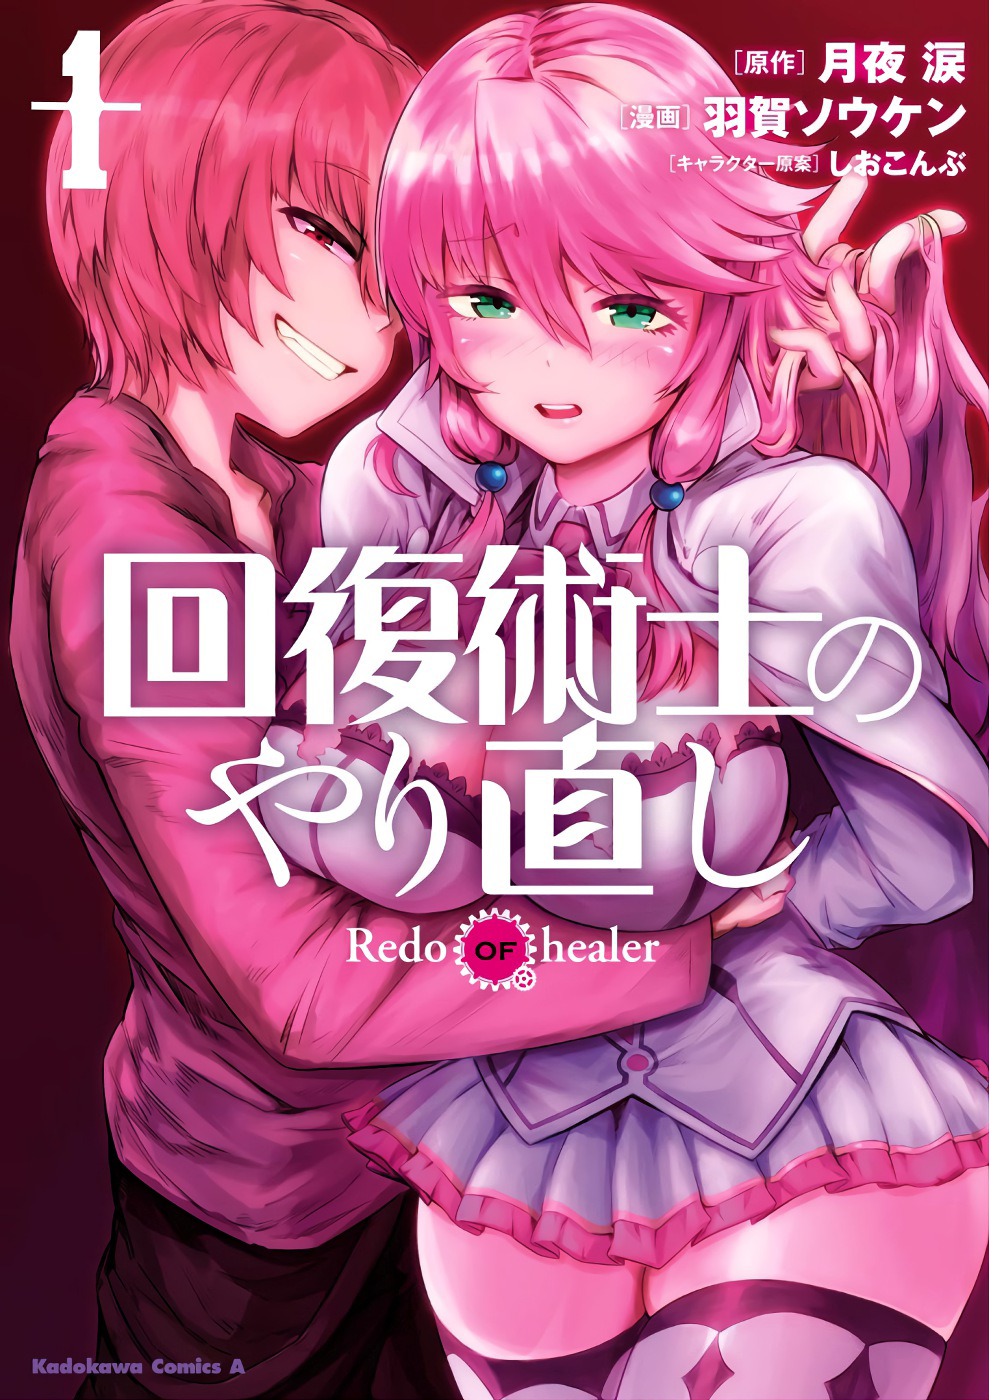 Redo Of The Healer Manga Kaifuku Jutsushi no Yarinaoshi - Redo of Healer (manga) | Kaifuku Jutsushi  no Yarinaoshi Wiki | Fandom